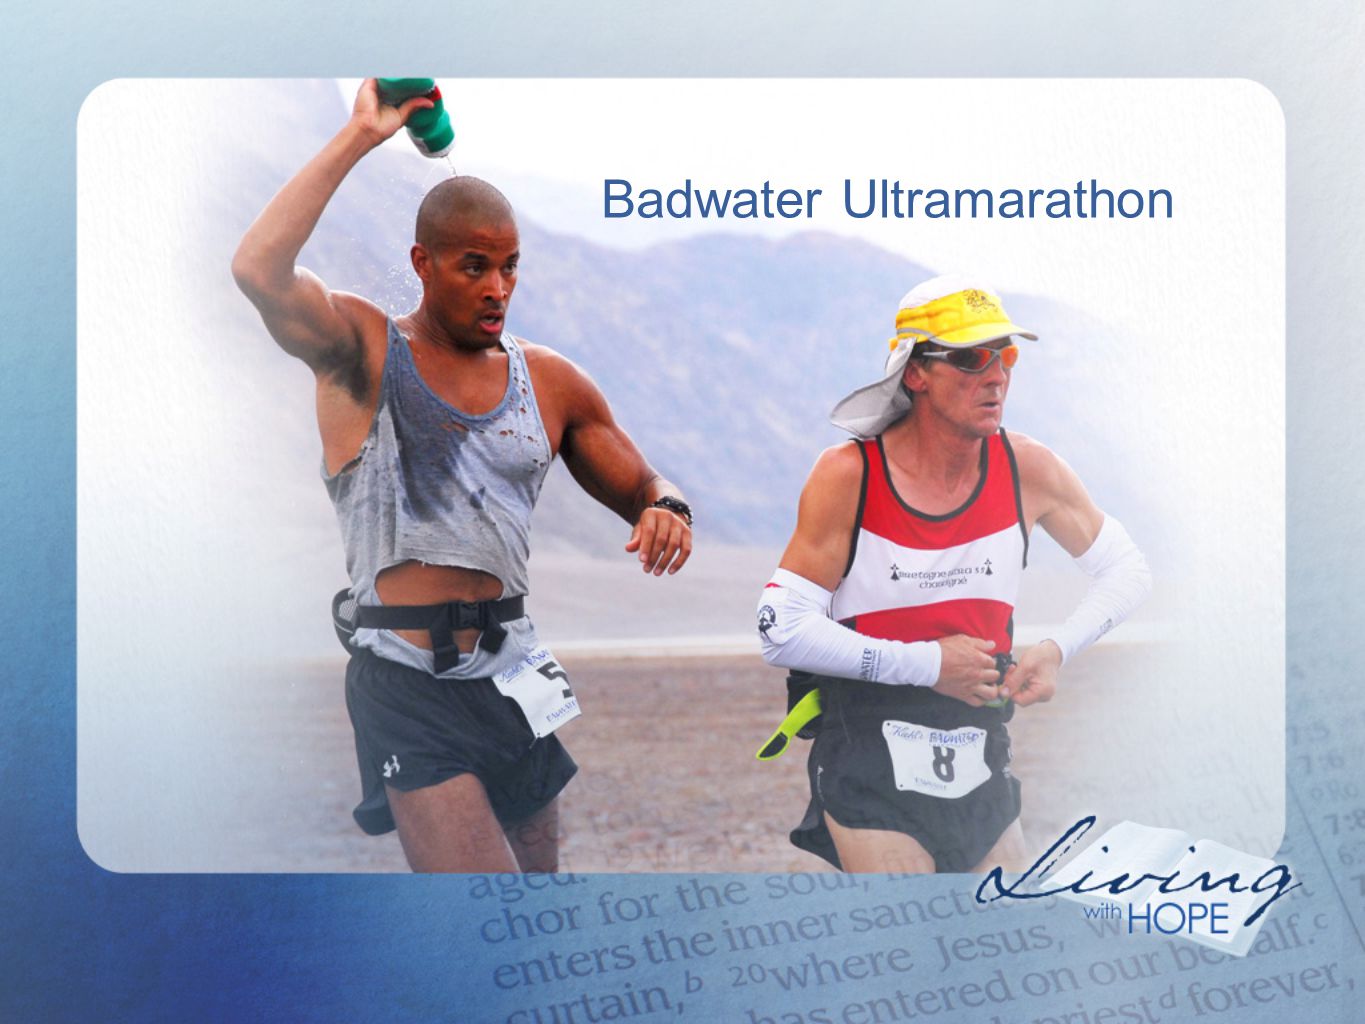 Badwater Ultramarathon